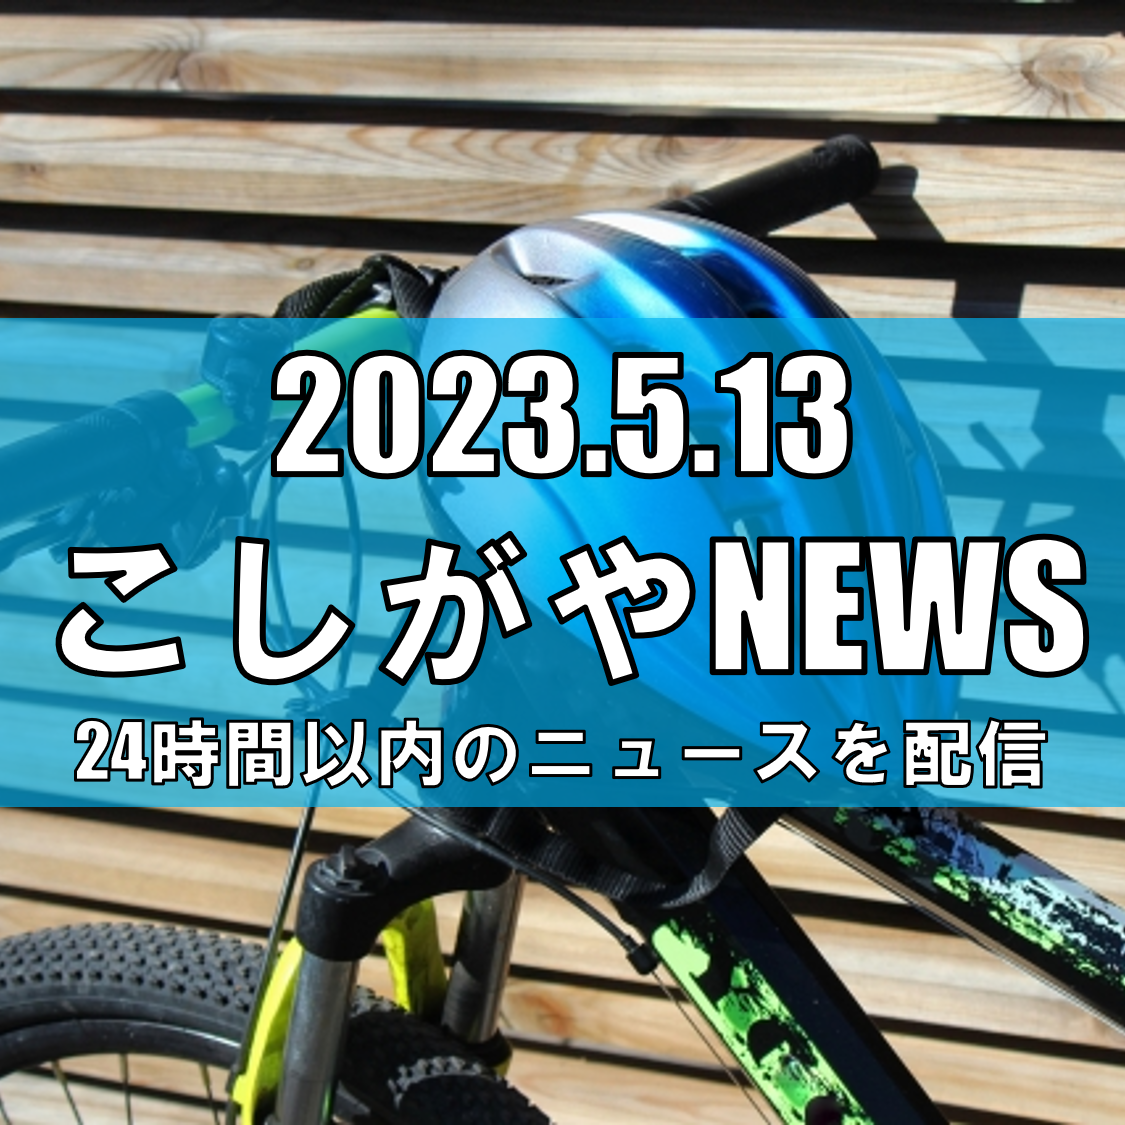 【越谷ニュース】春の交通安全運動が始まる　ヘルメット着用を　埼玉県警、死亡事故防止へ周知